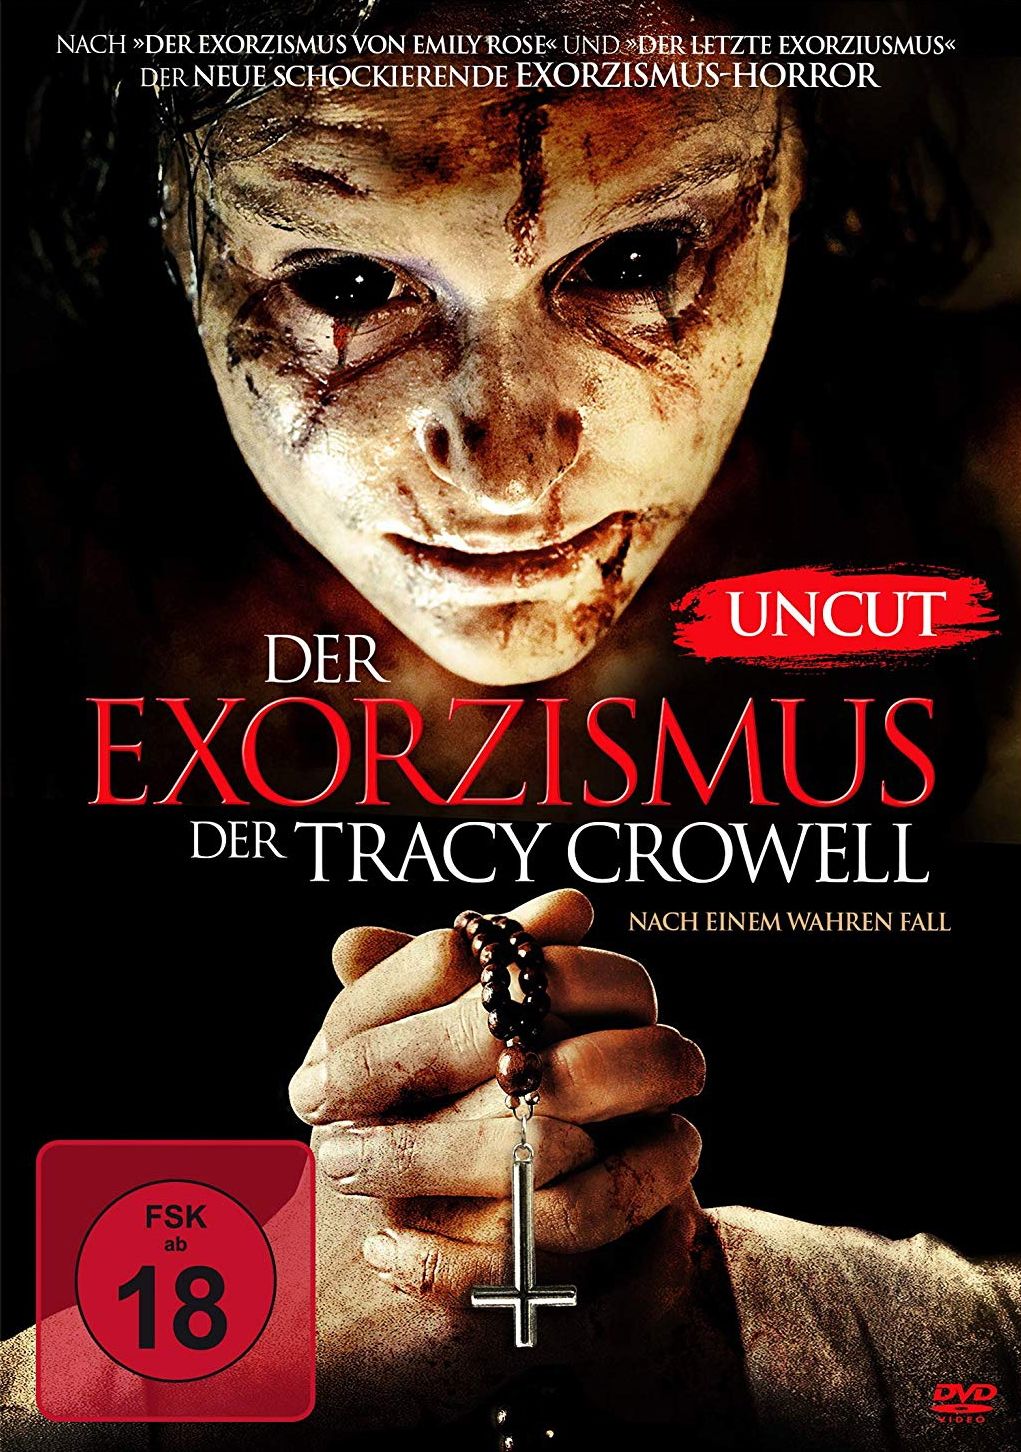 Exorzismus der Tracy Crowell, Der (Uncut)